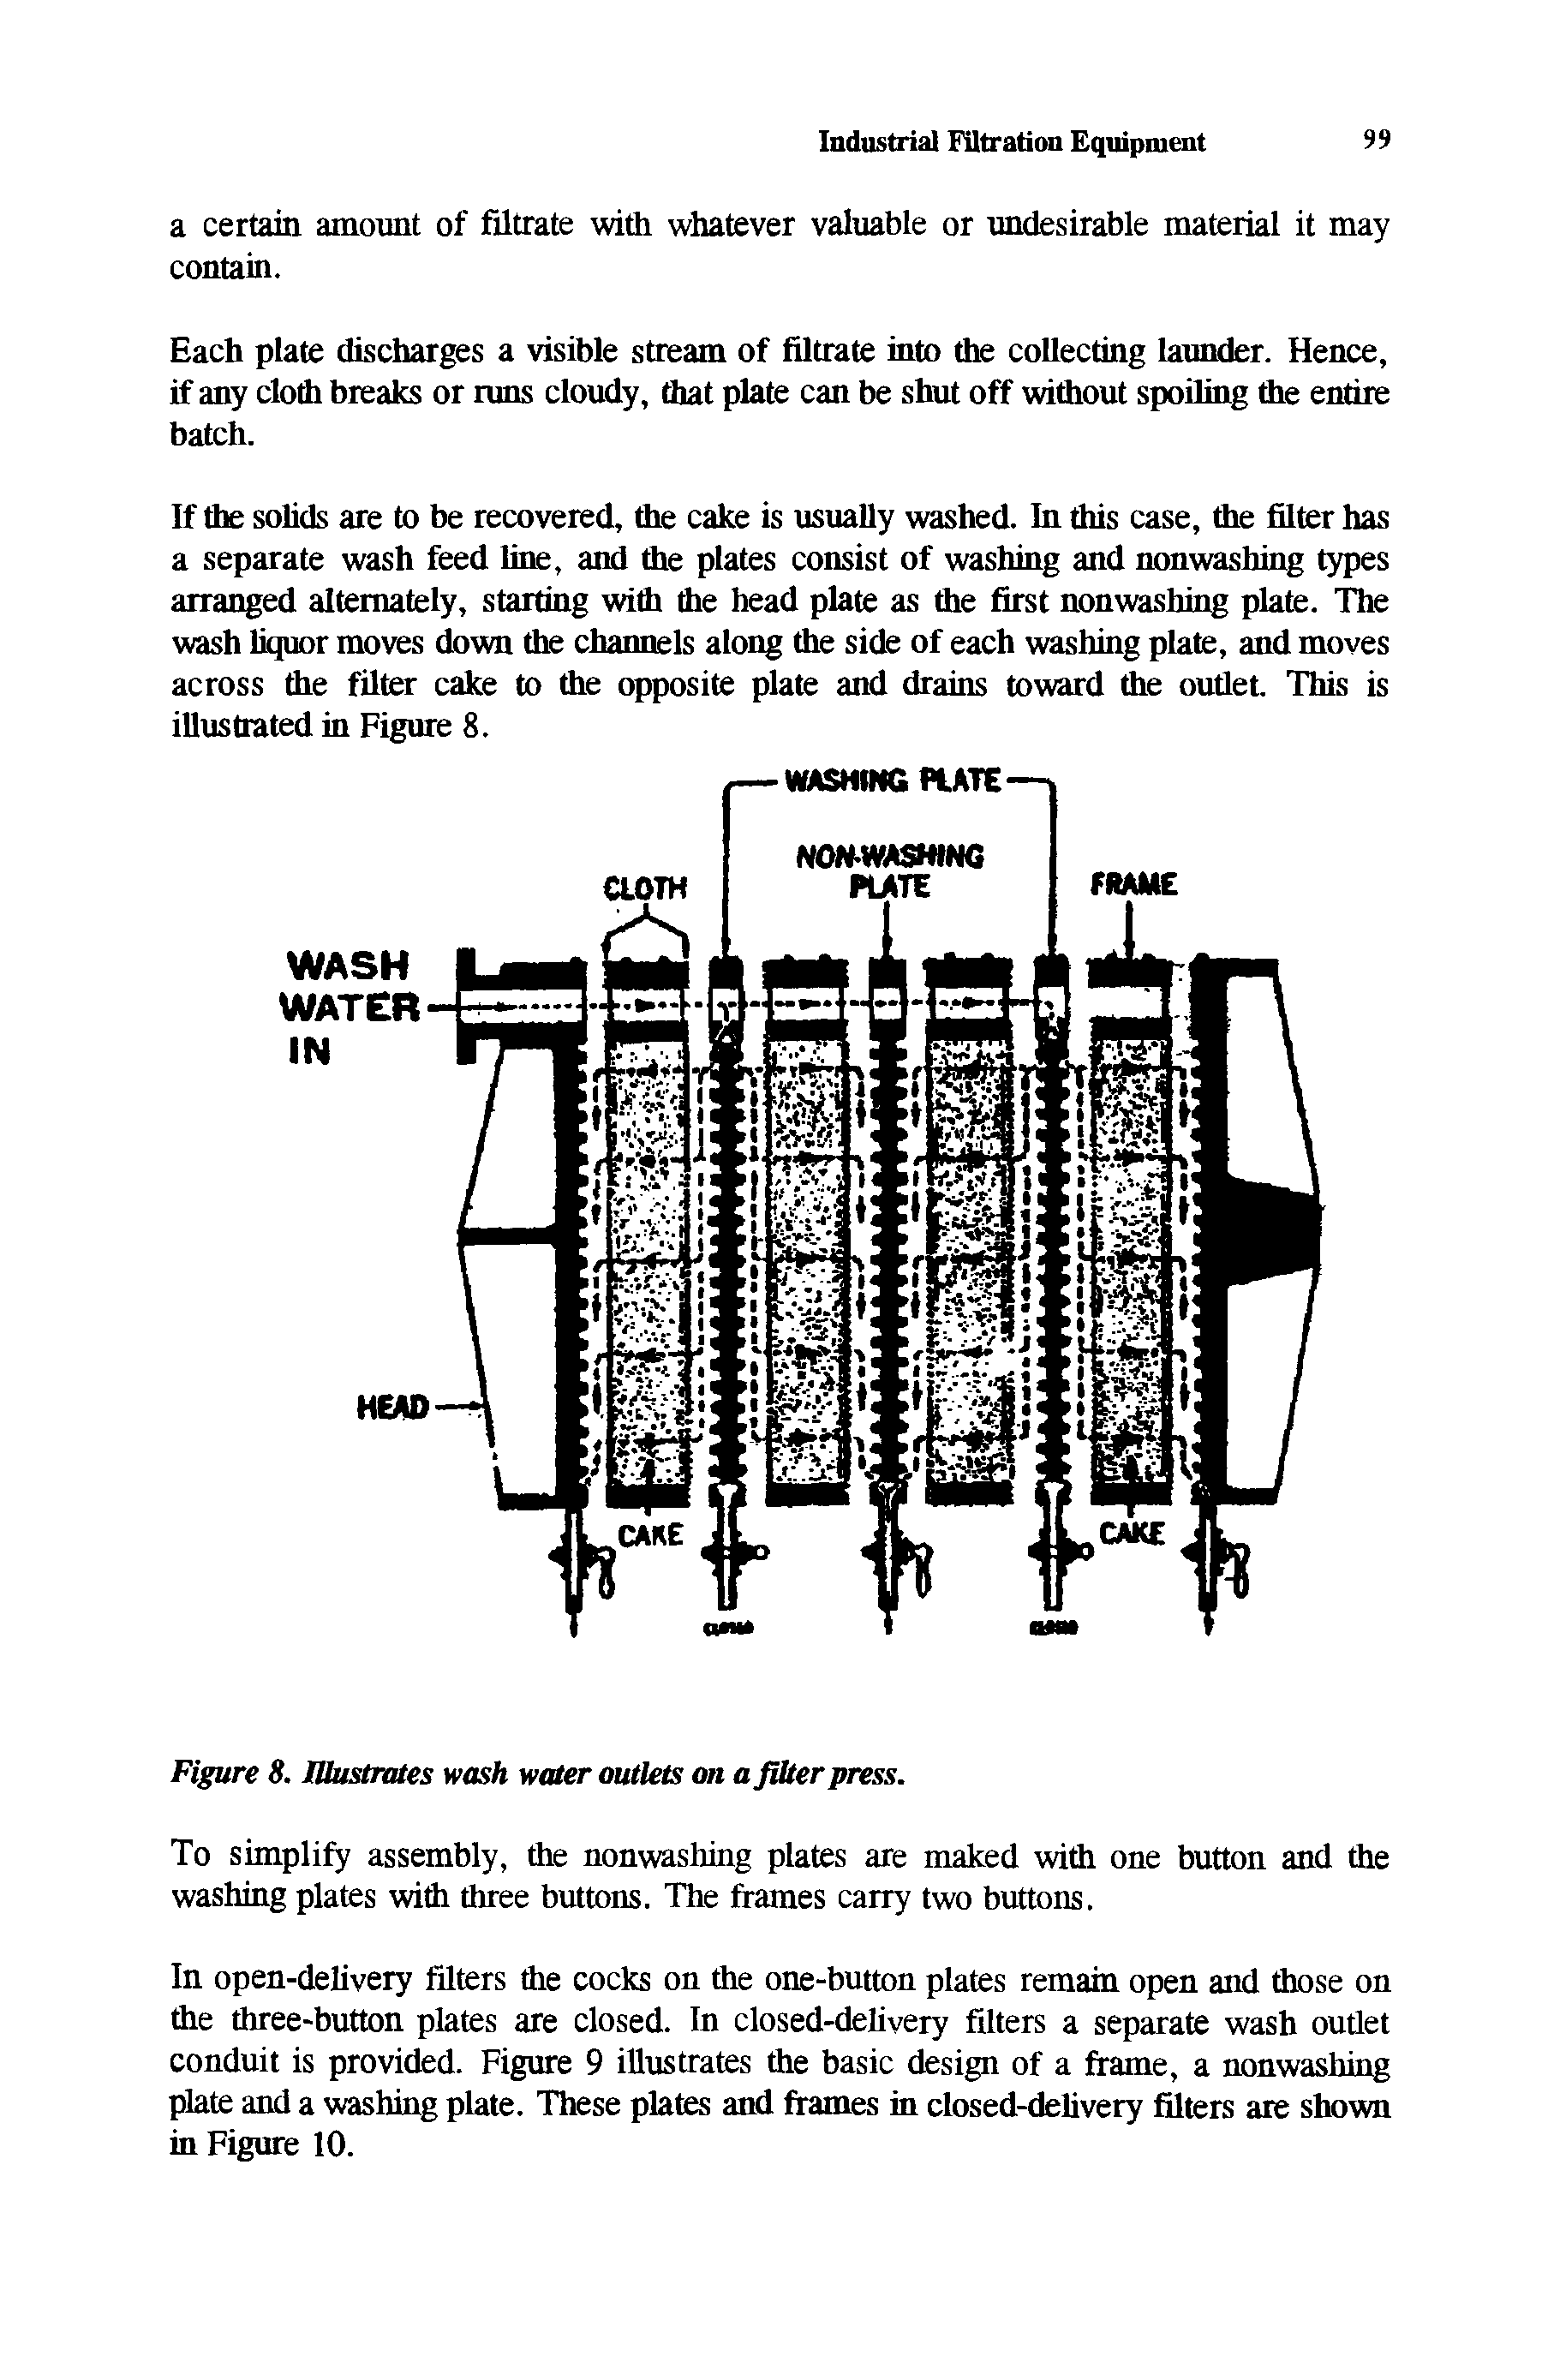 Figure 8. Ulustrutes wash water outlets on a fiber press.